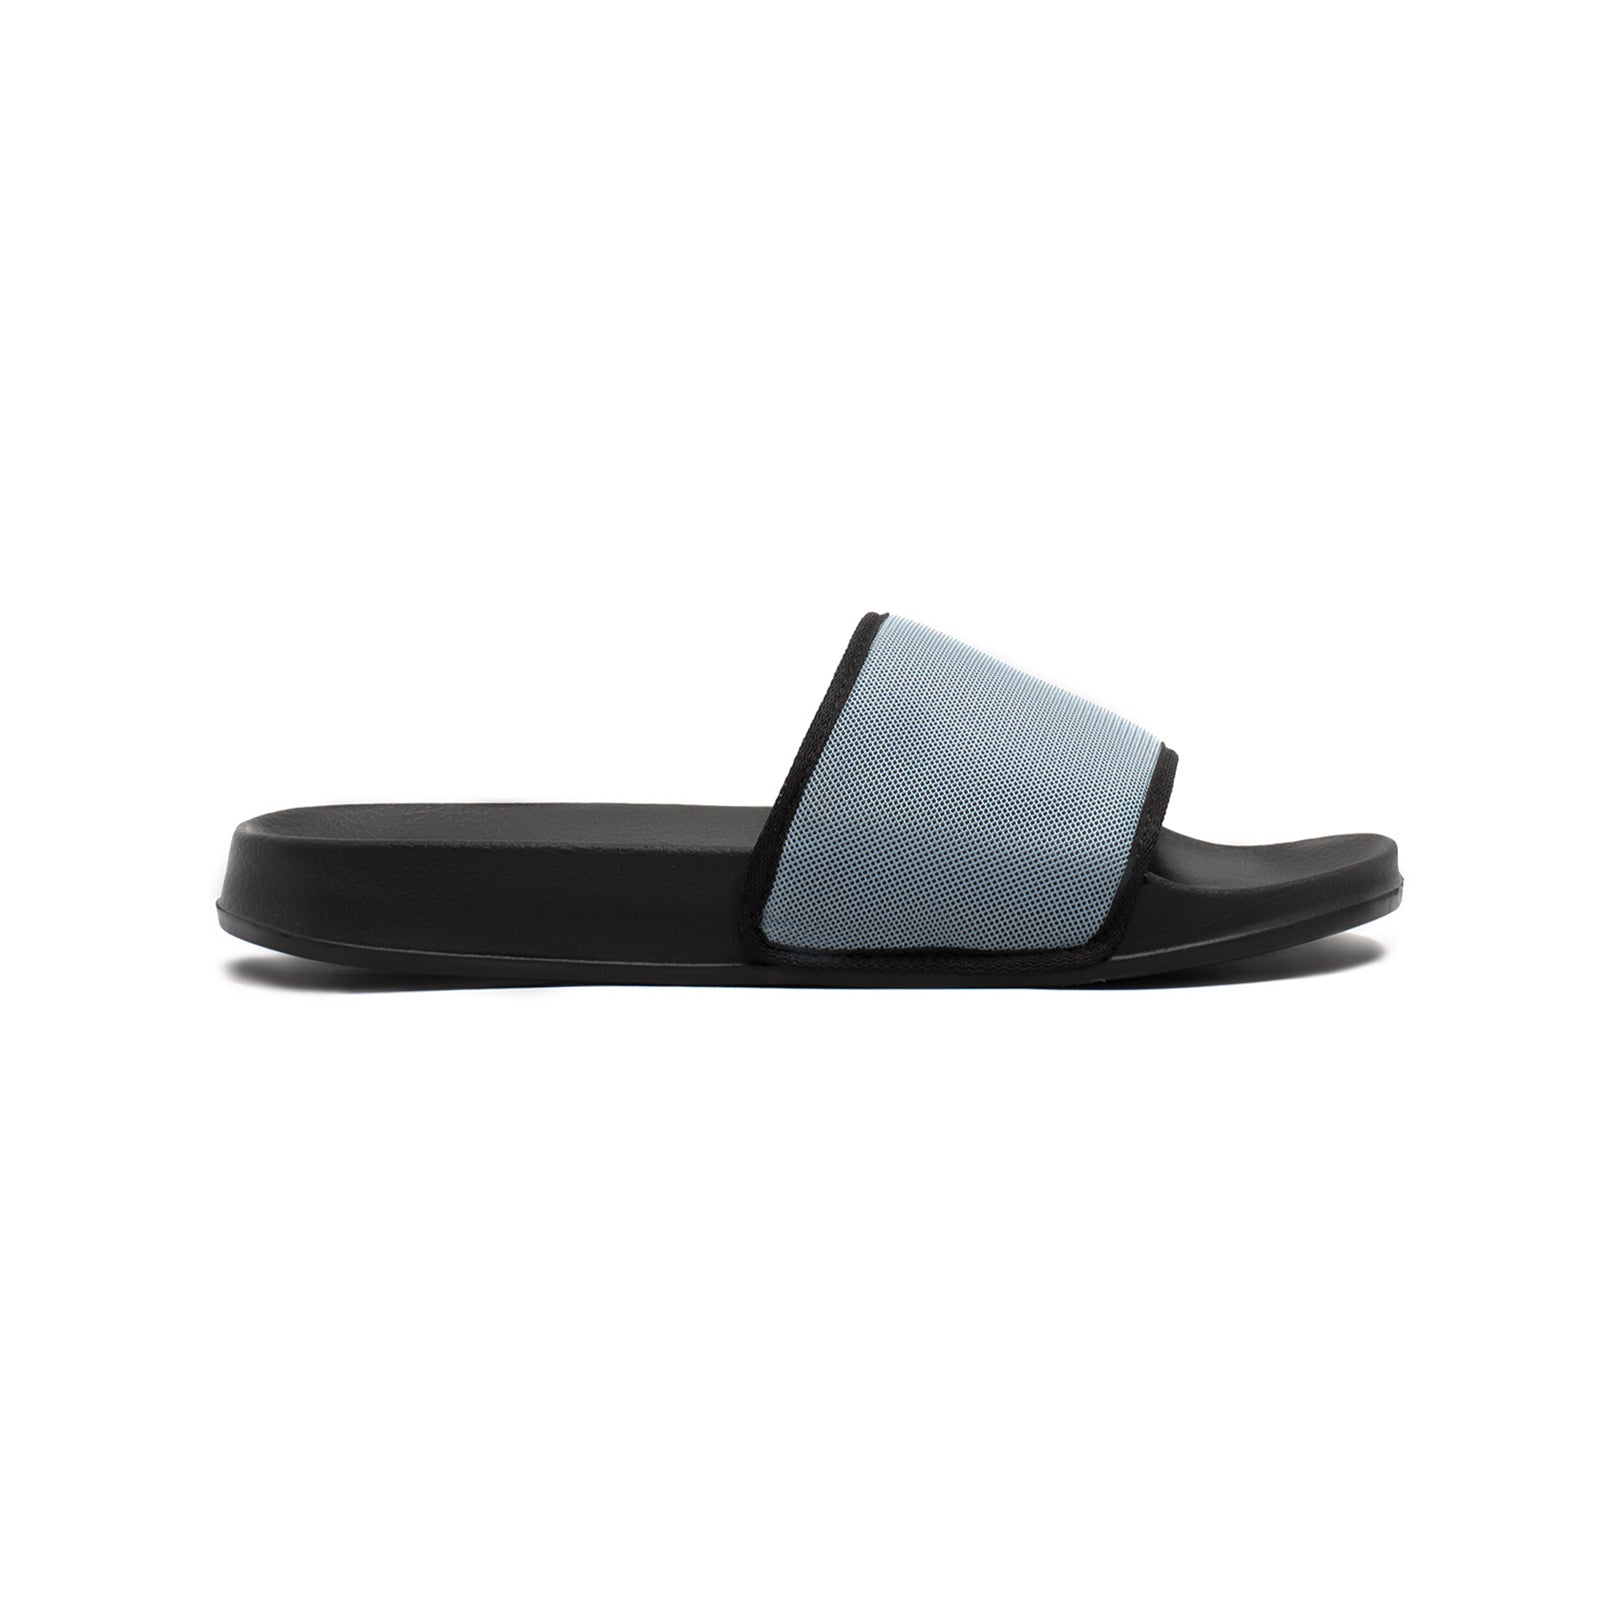 Buy stylish slide slippers for men online